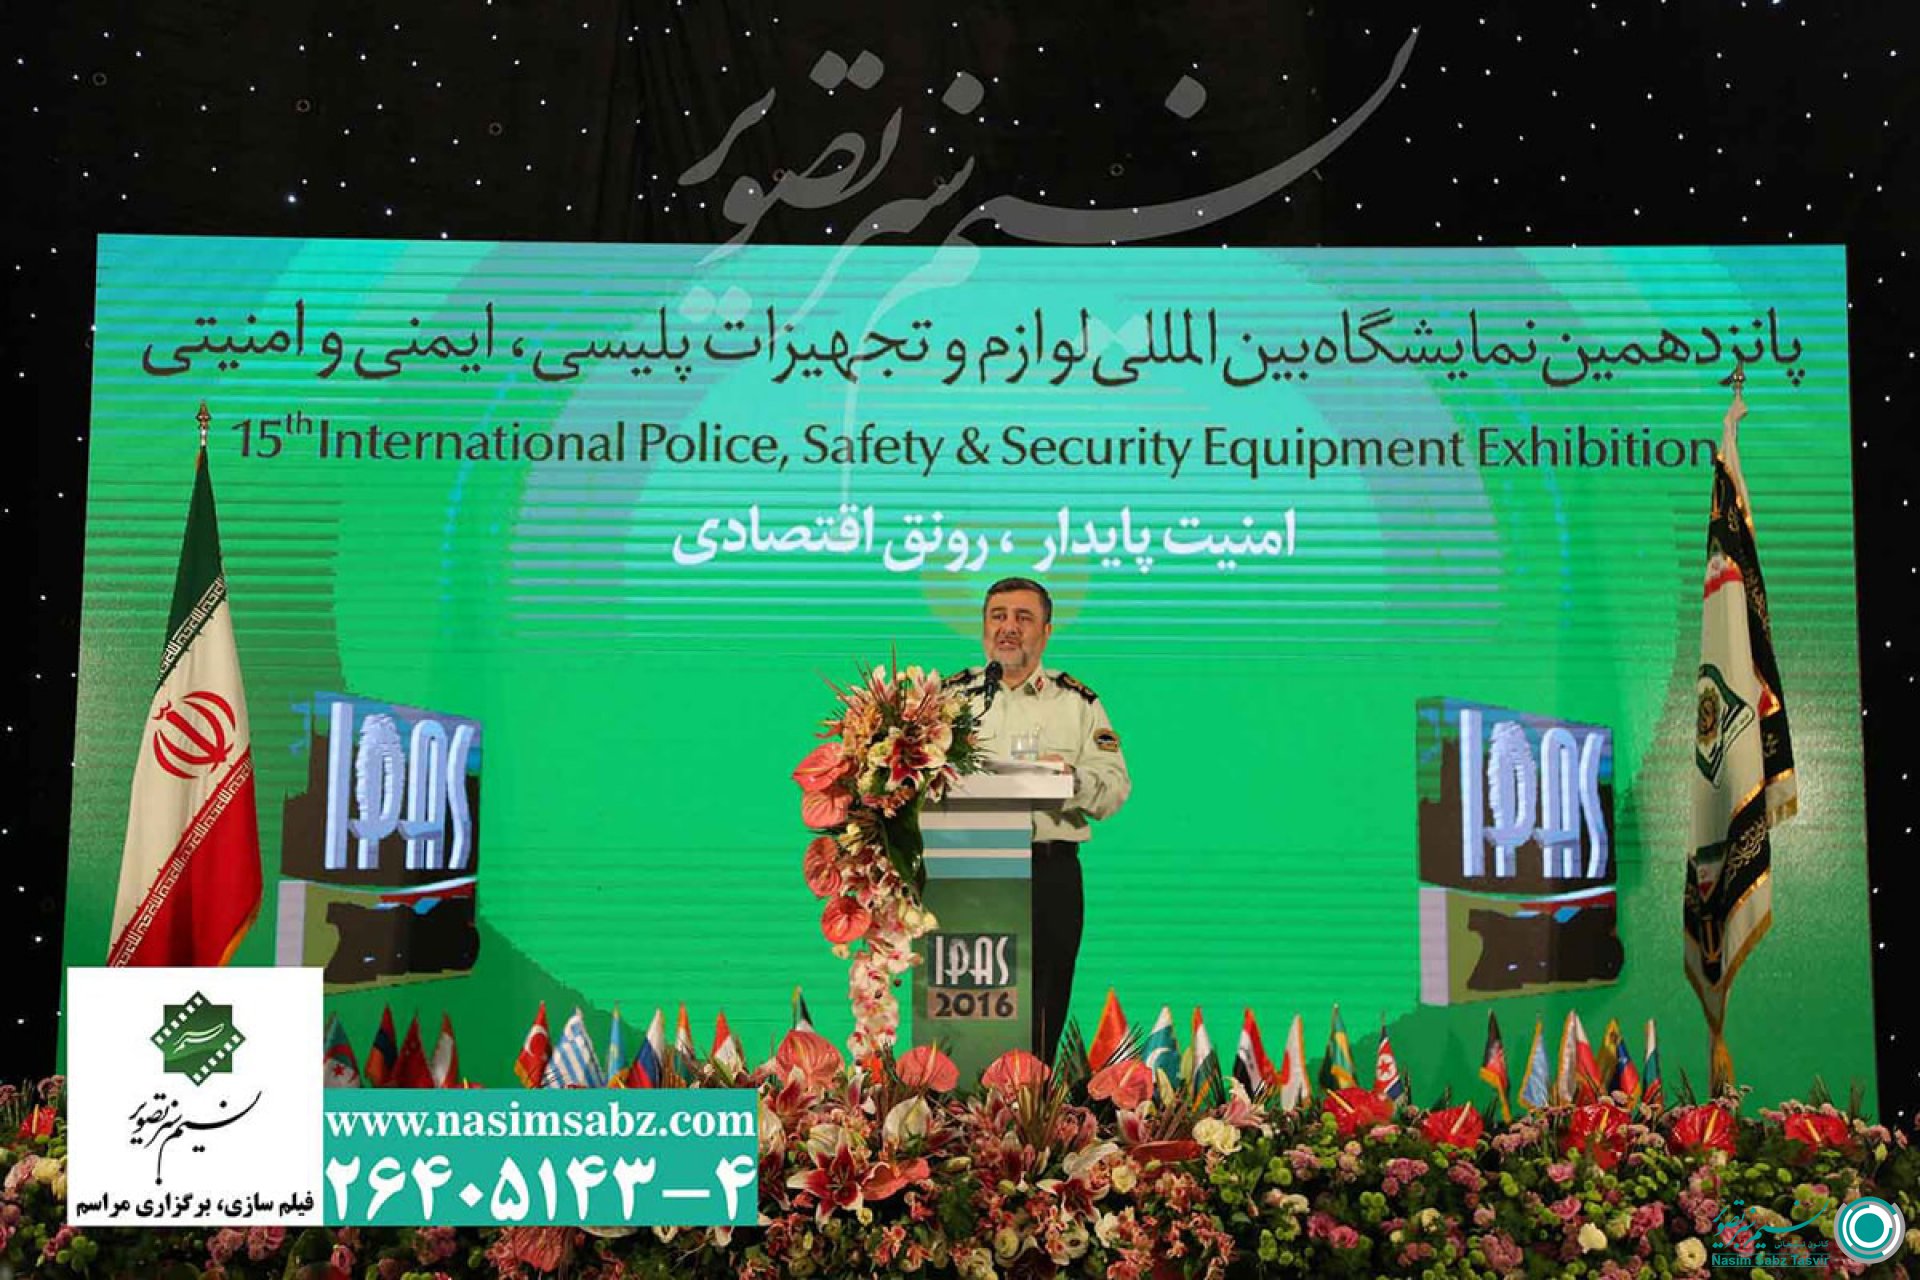 برگزاری افتتاحیه پانزدهمین نمایشگاه بین المللی تجهیزات پلیس، ایمنی و امنیتی 489